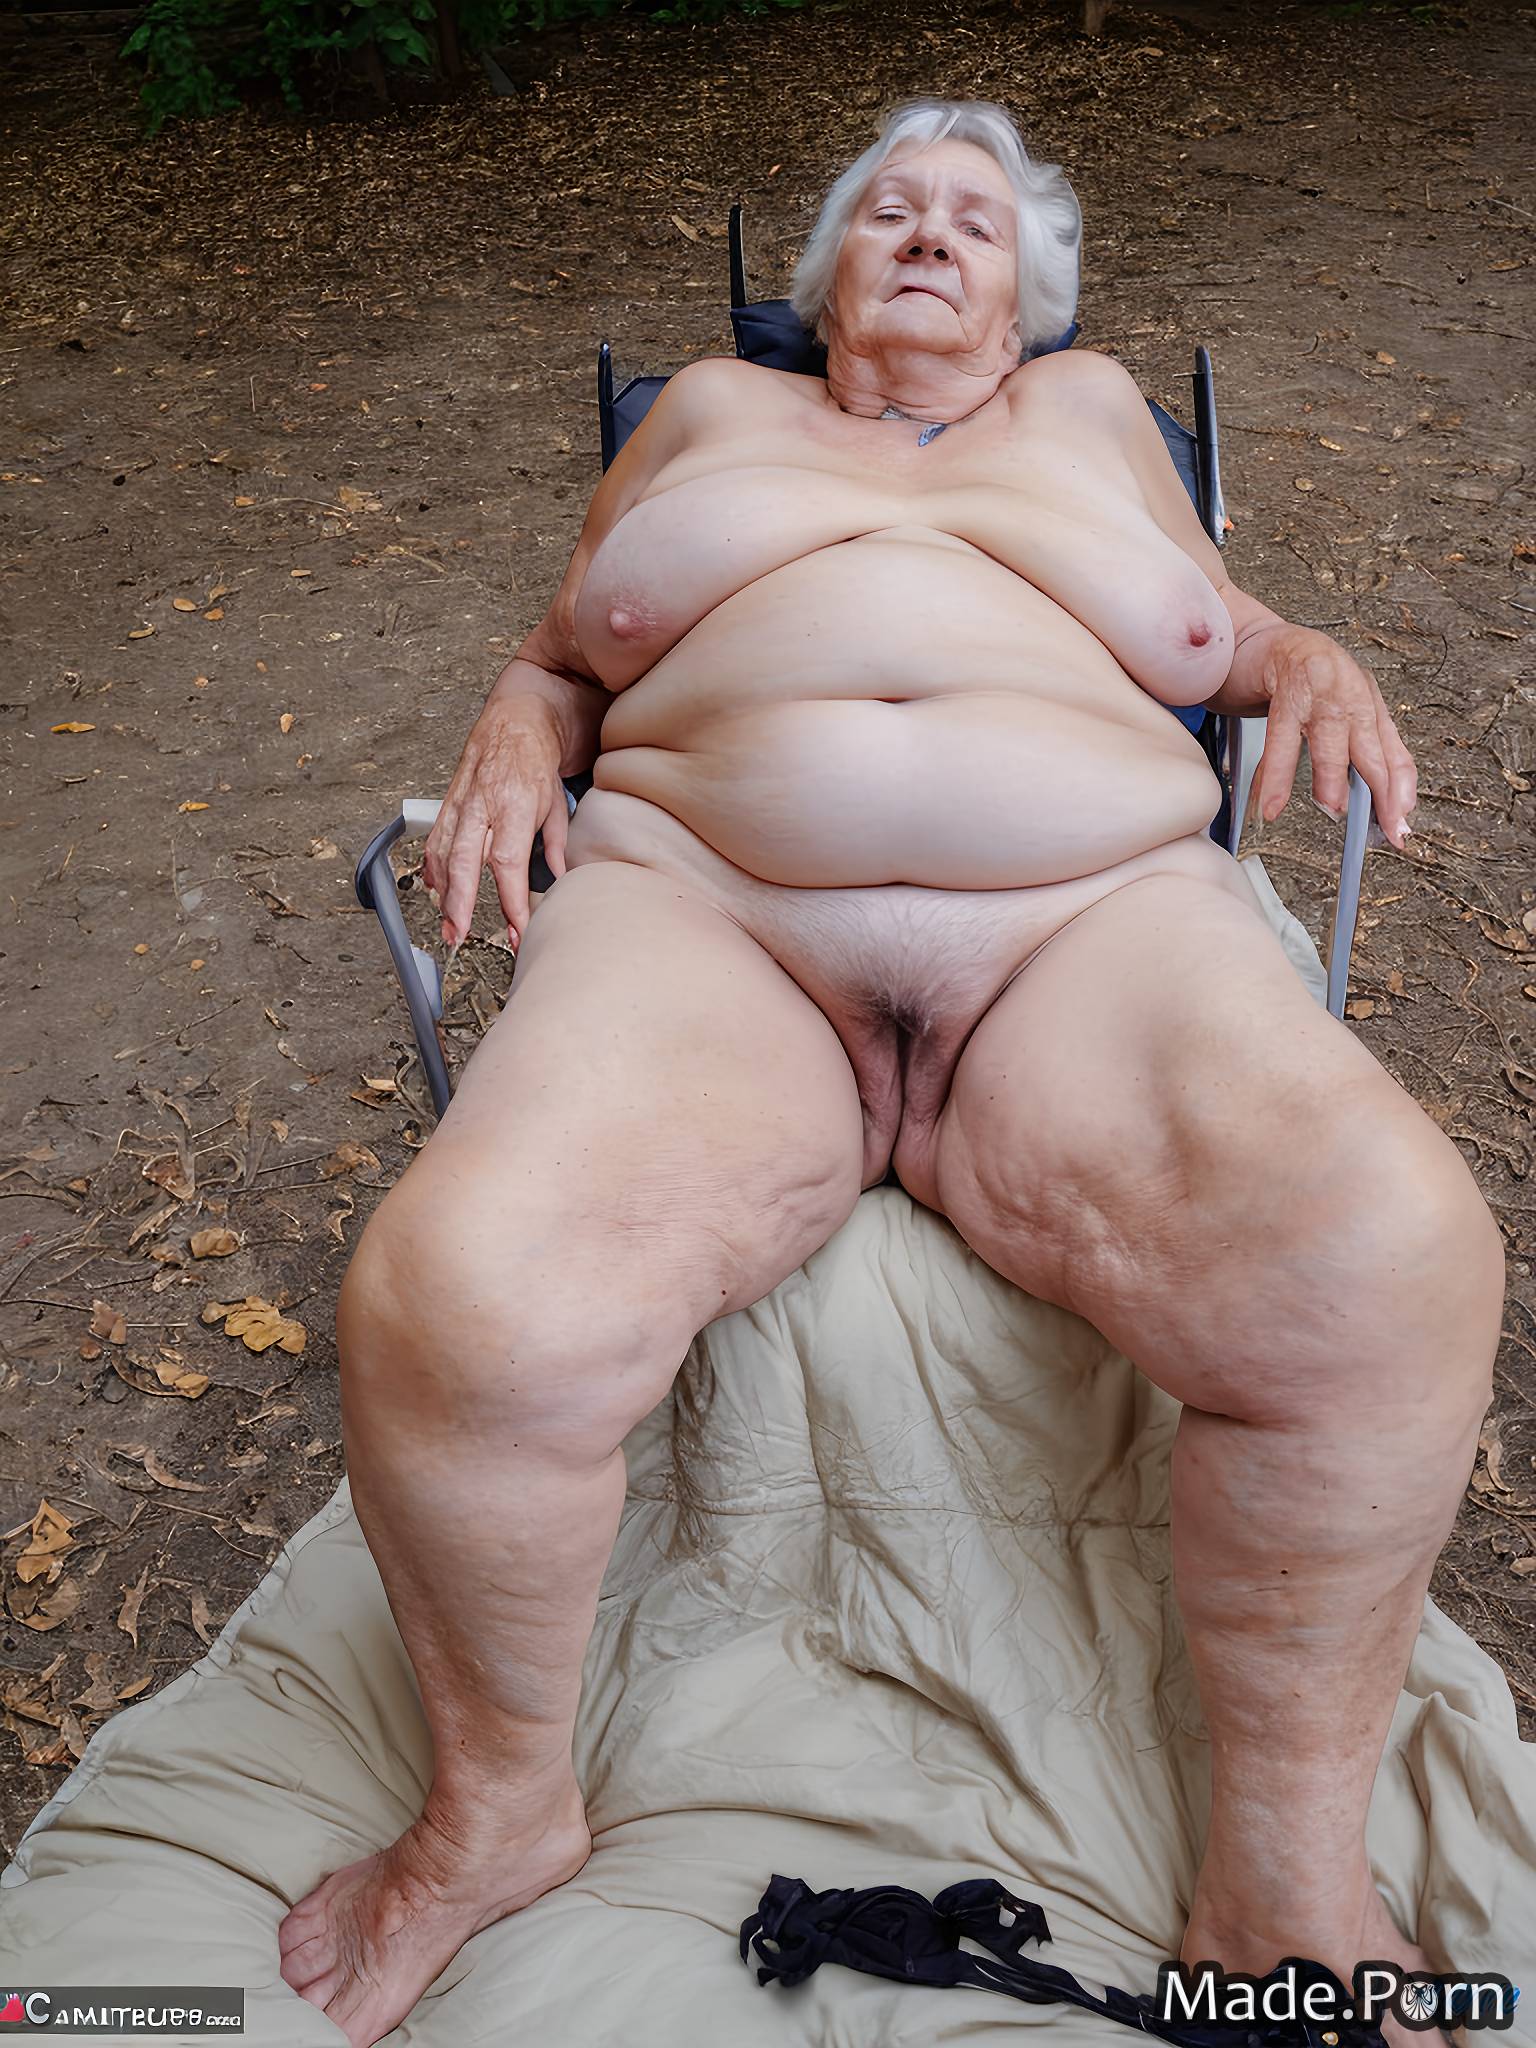 nipples german gigantic boobs nude looking at viewer park woman